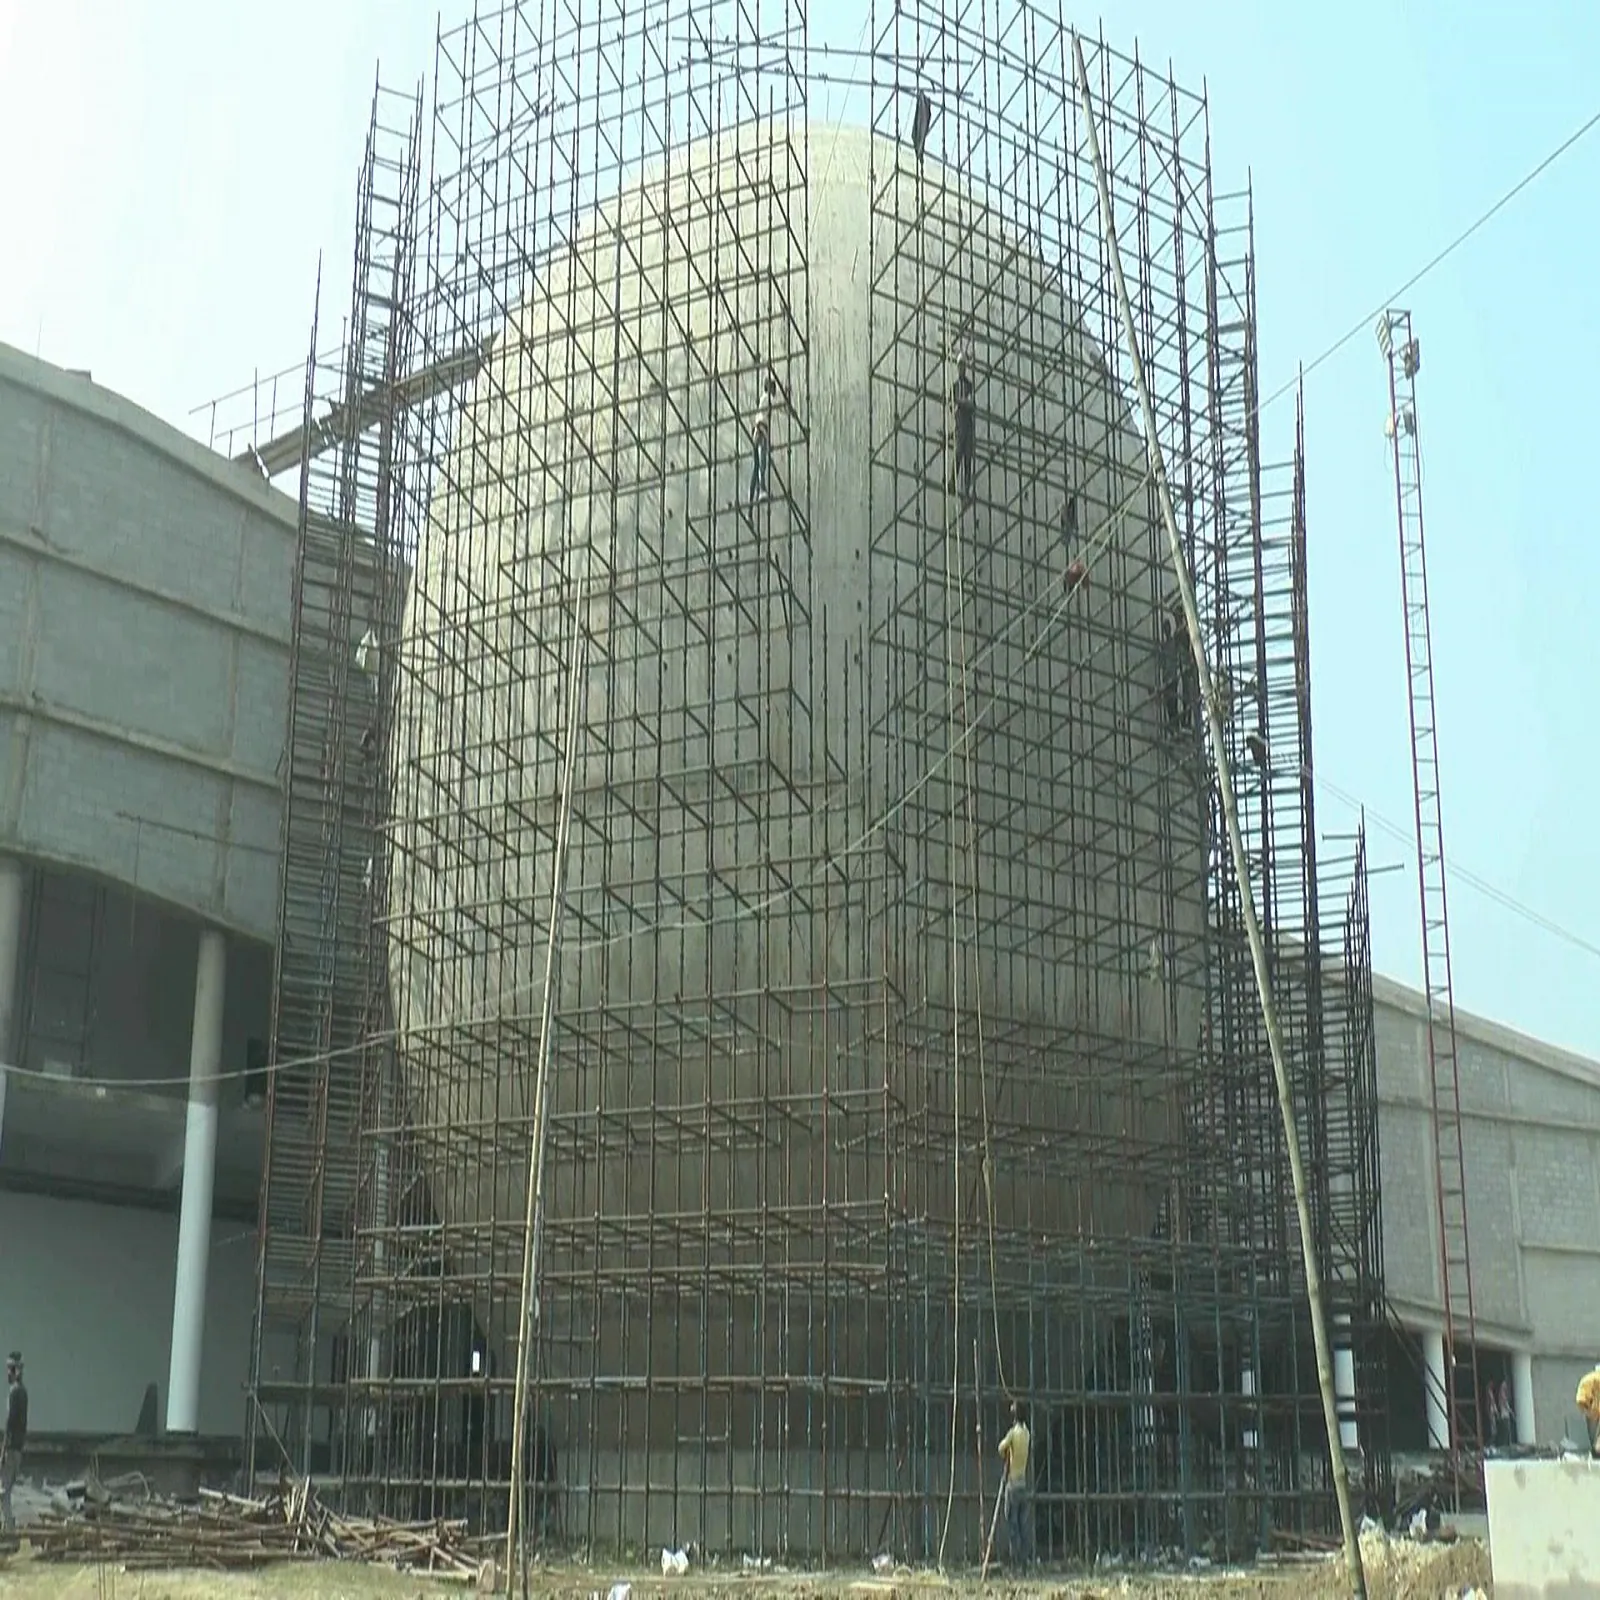 second planetarium of bihar is being built in Darbhanga